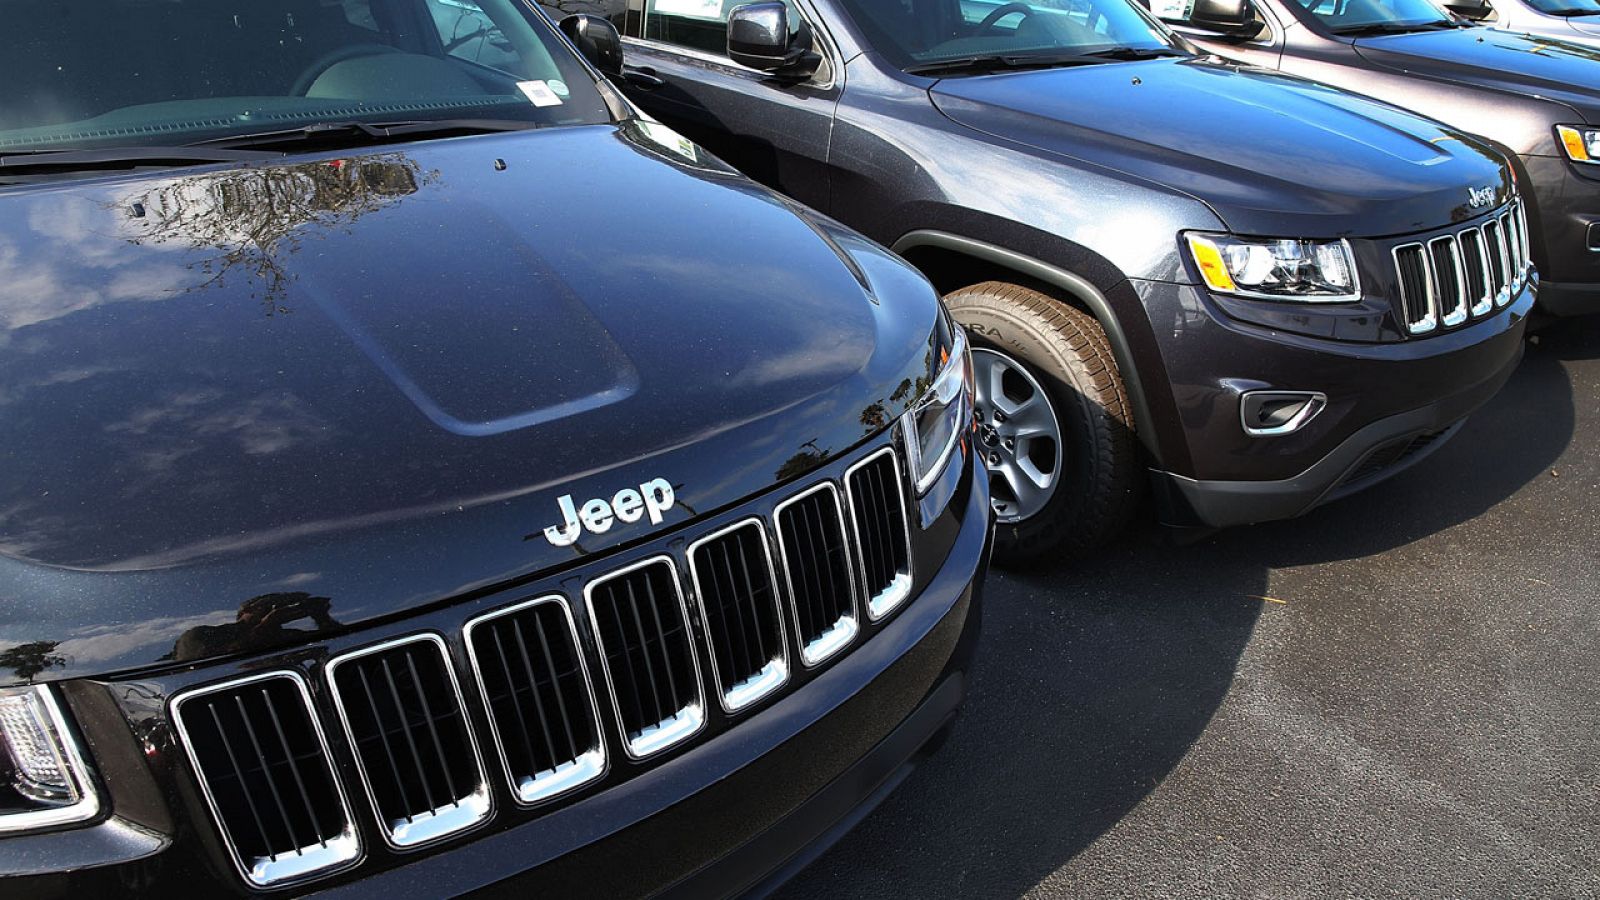 El modelo Jeep Grand Cherokee es uno de los presuntamente manipulados